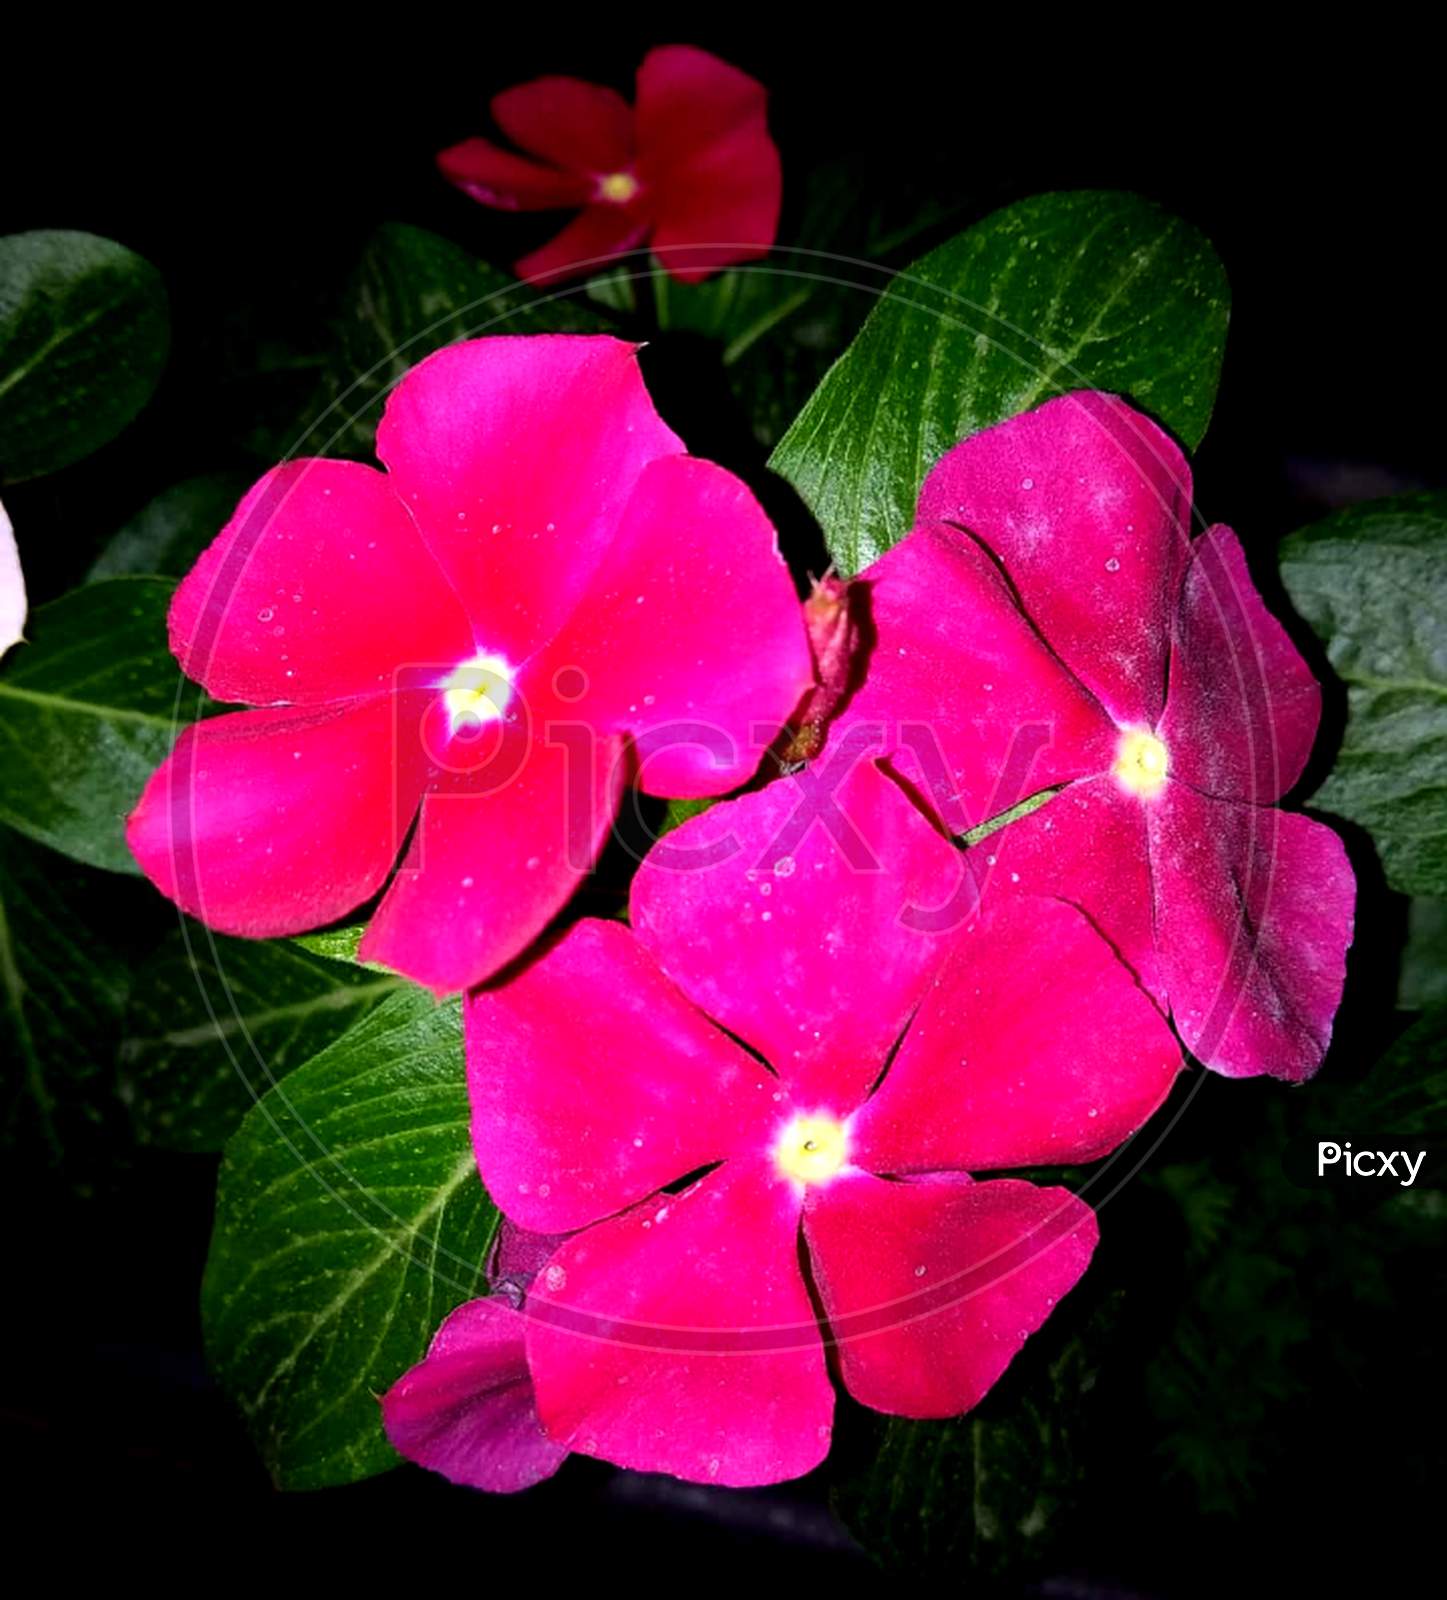 Deep pink flowers